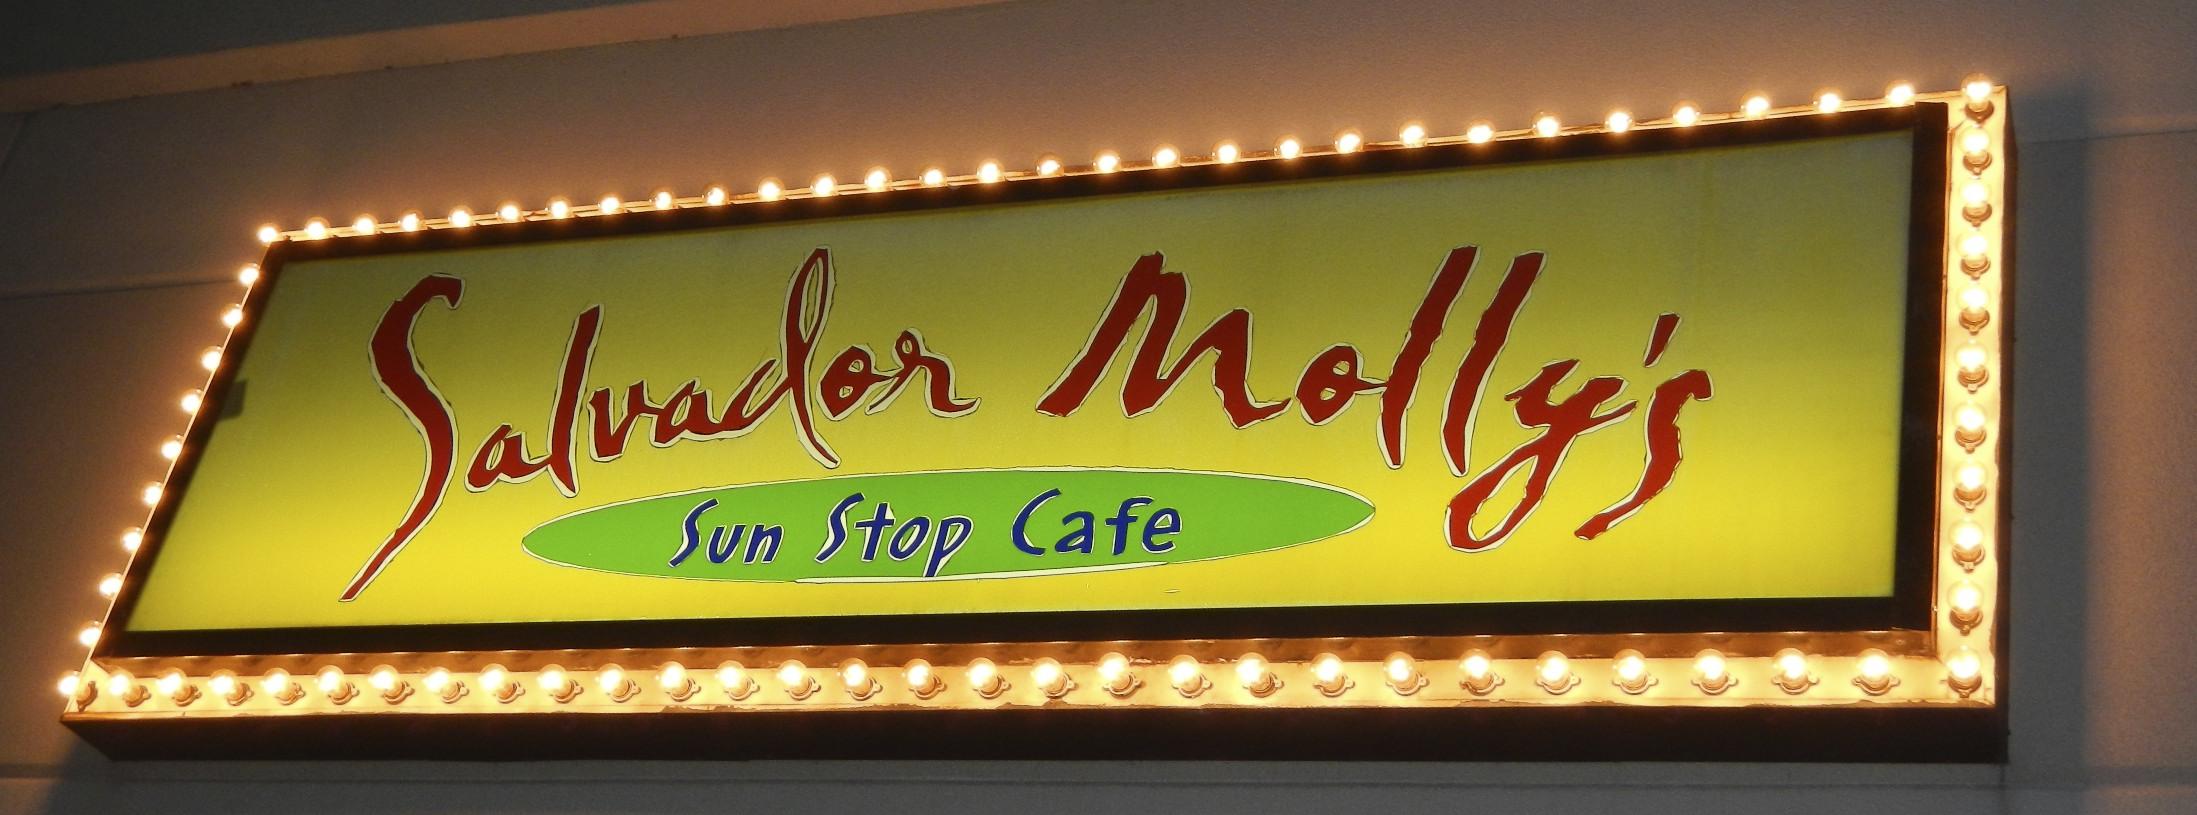 Salvador Molly's